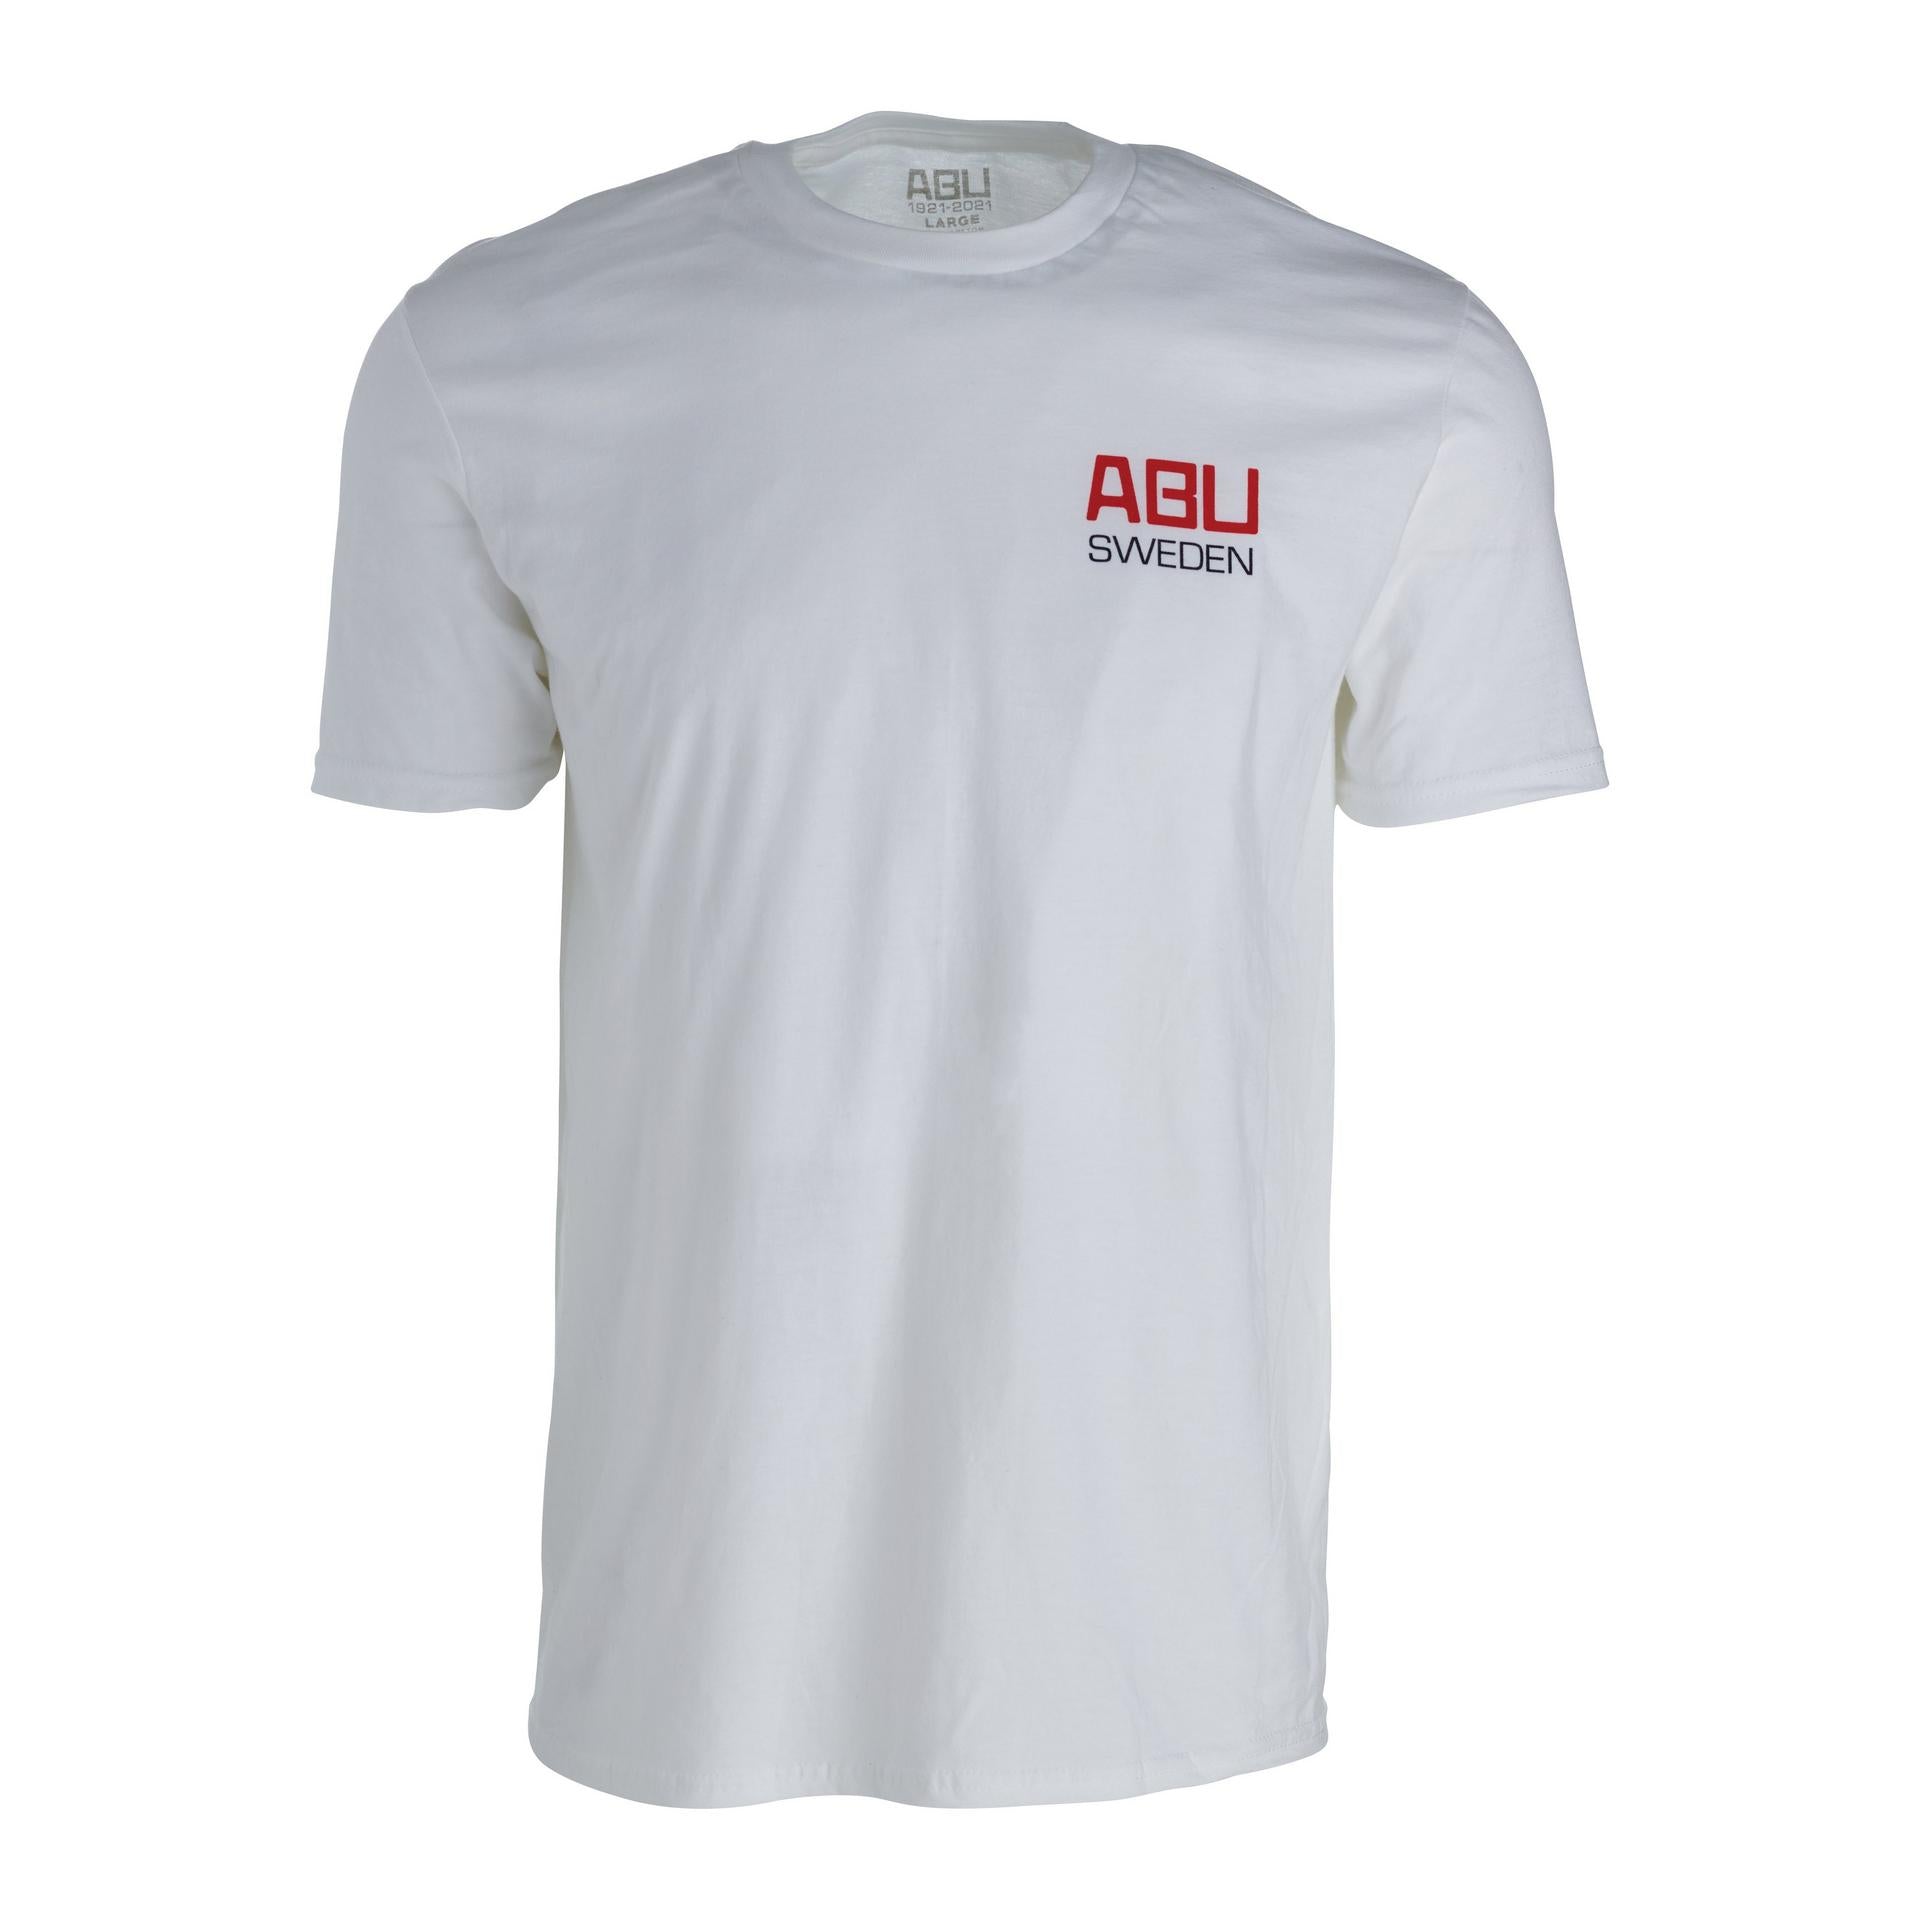 ABU 100 YEARS T-Shirt - AB URFABRIKEN | Abu Garcia®